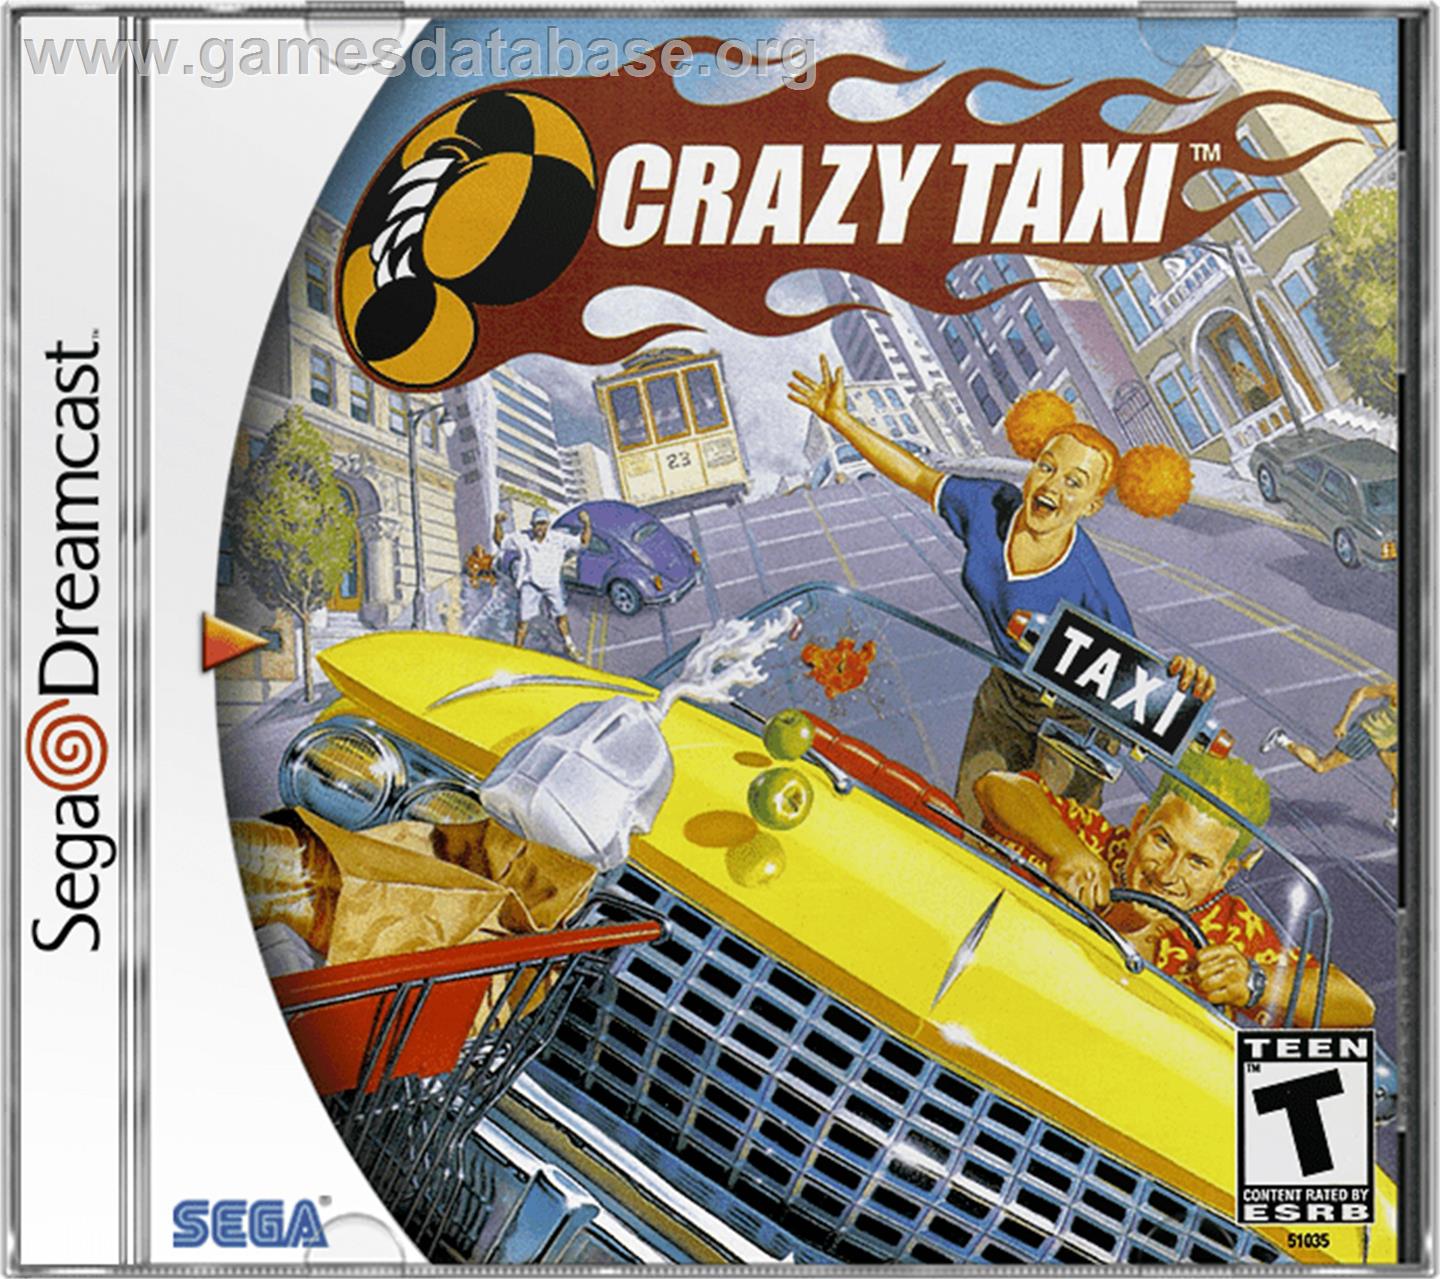 Crazy Taxi - Sega Dreamcast - Artwork - Box